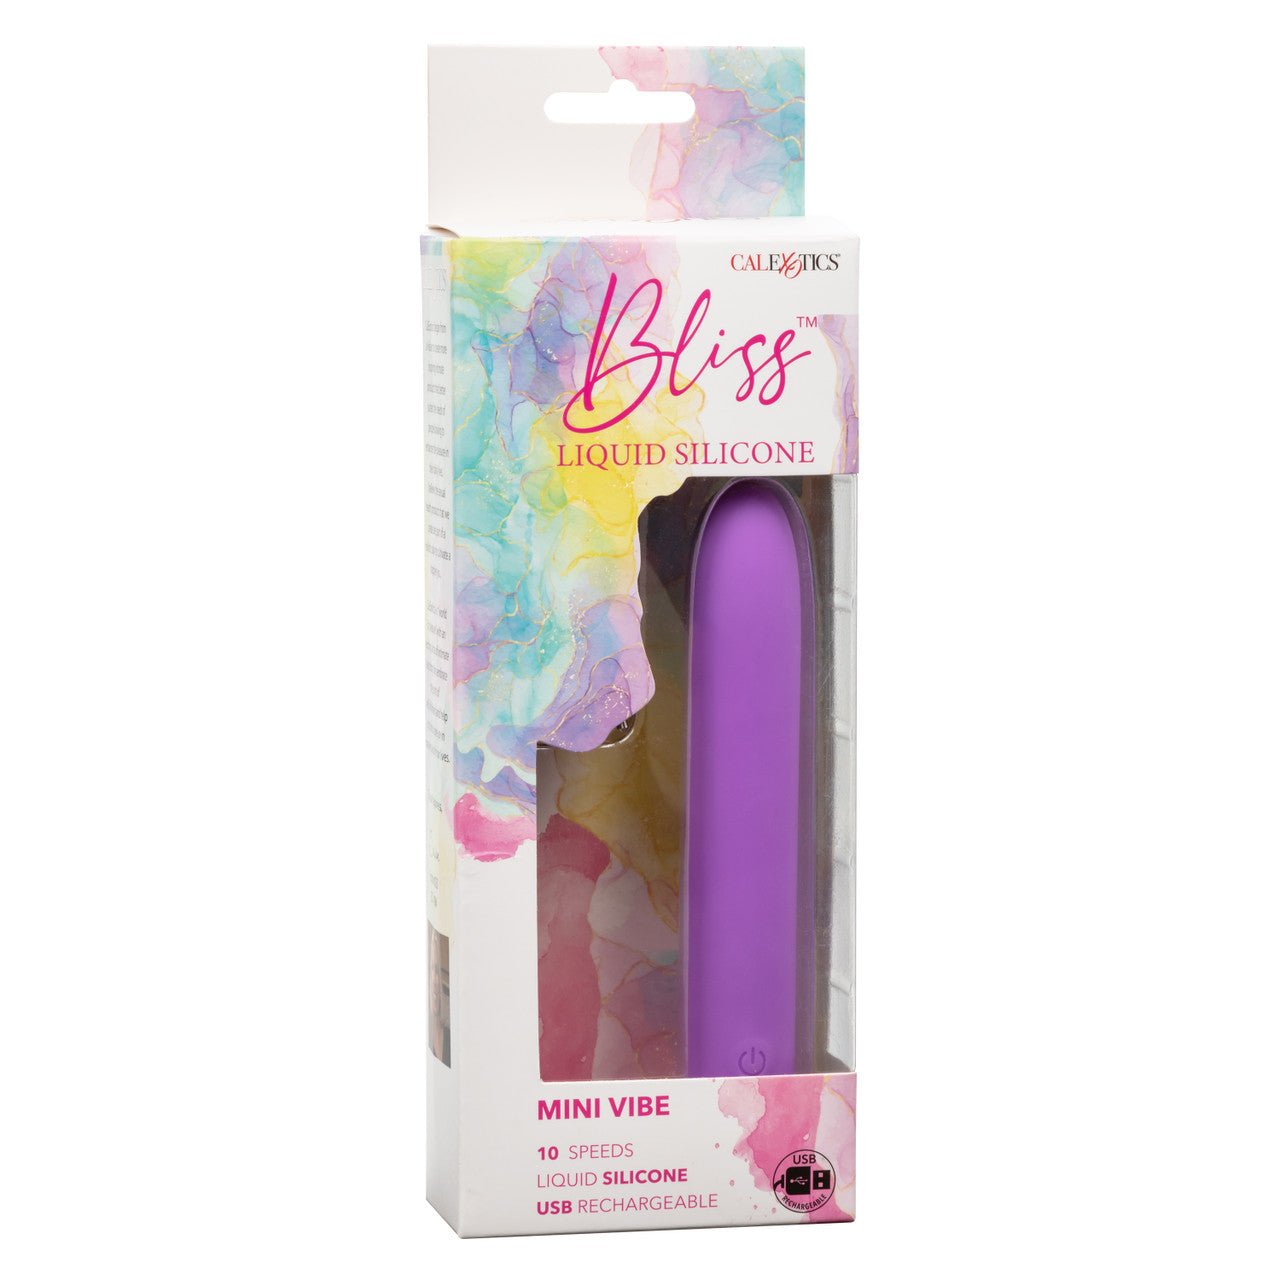 Bliss Liquid Silicone Mini G Vibrator - Purple